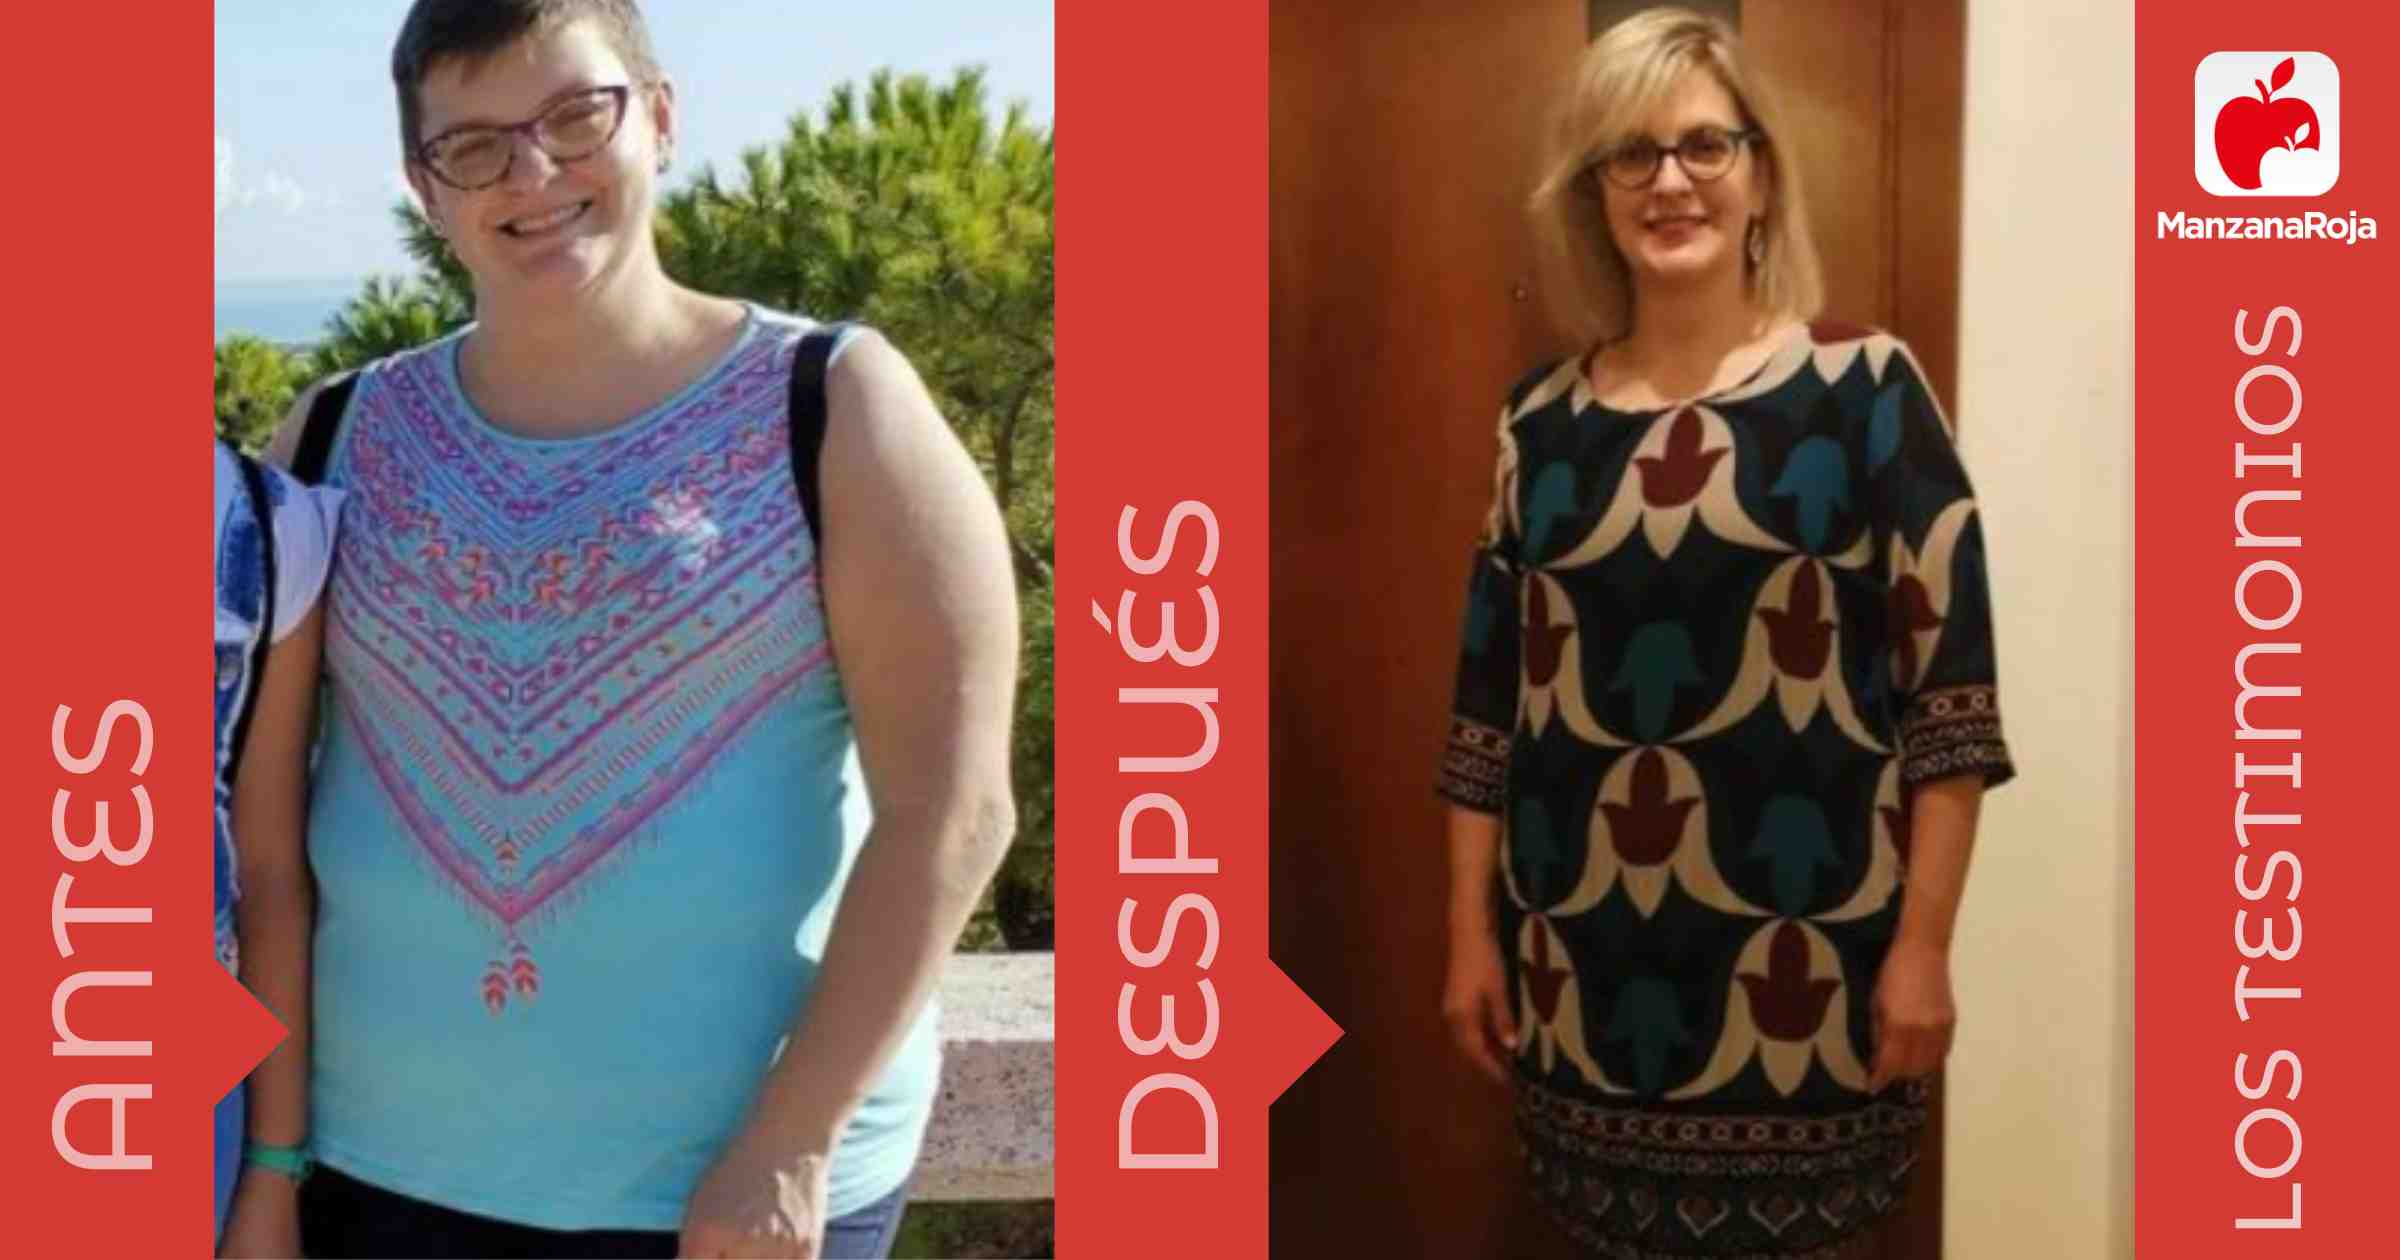 Laura antes y después de usar la app ManzanaRoja para perder peso